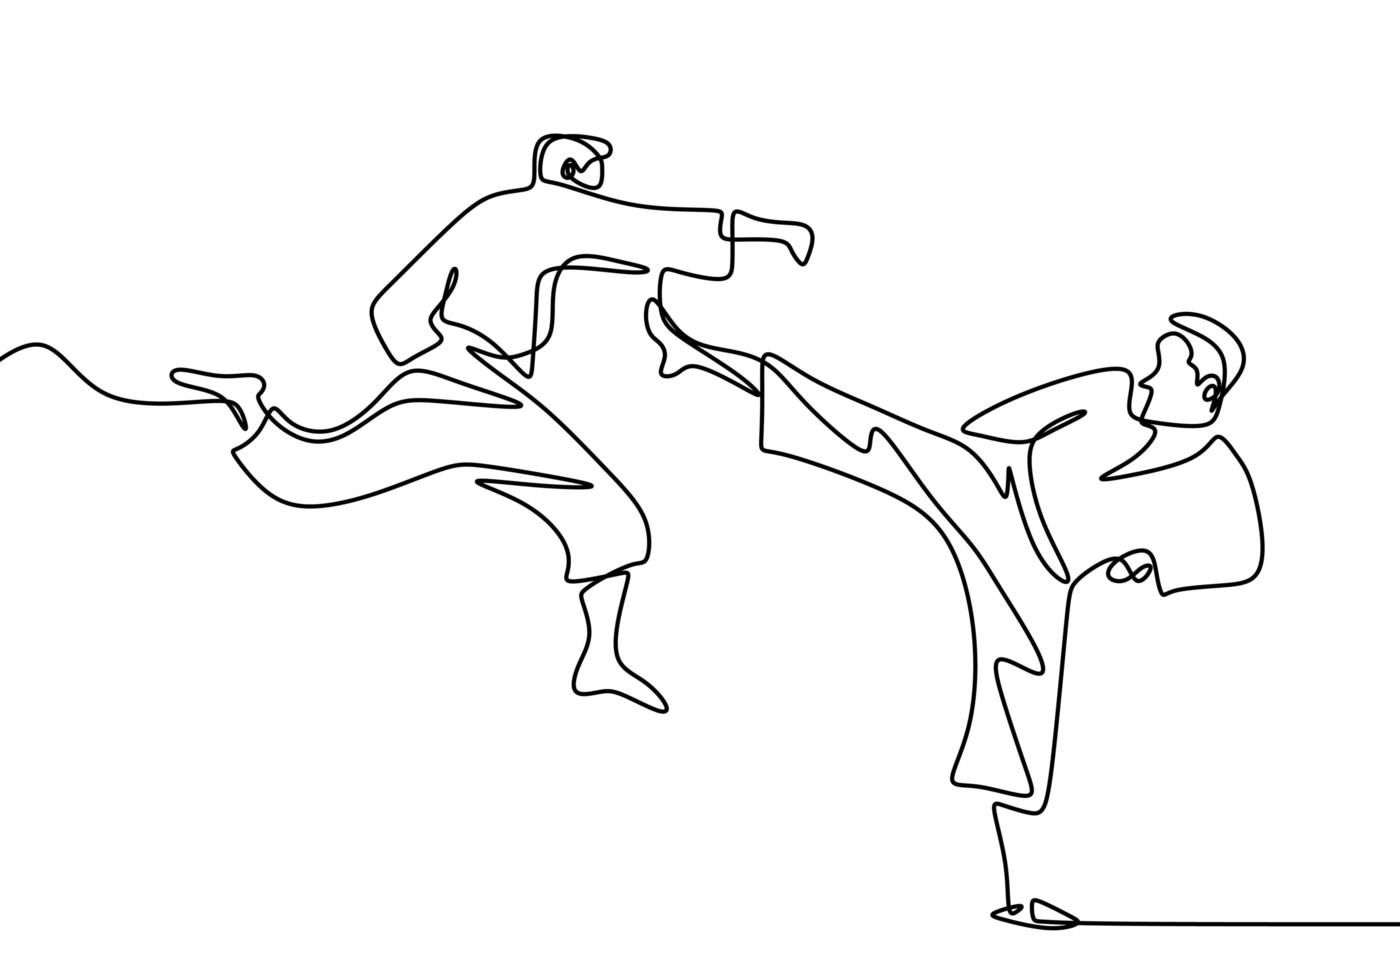 en enda kontinuerlig linje ritning av taekwondo och karate träning. två äldre män övar taekwondo genom att attackera med ben och handslag handdrag isolerad på vit bakgrund vektor